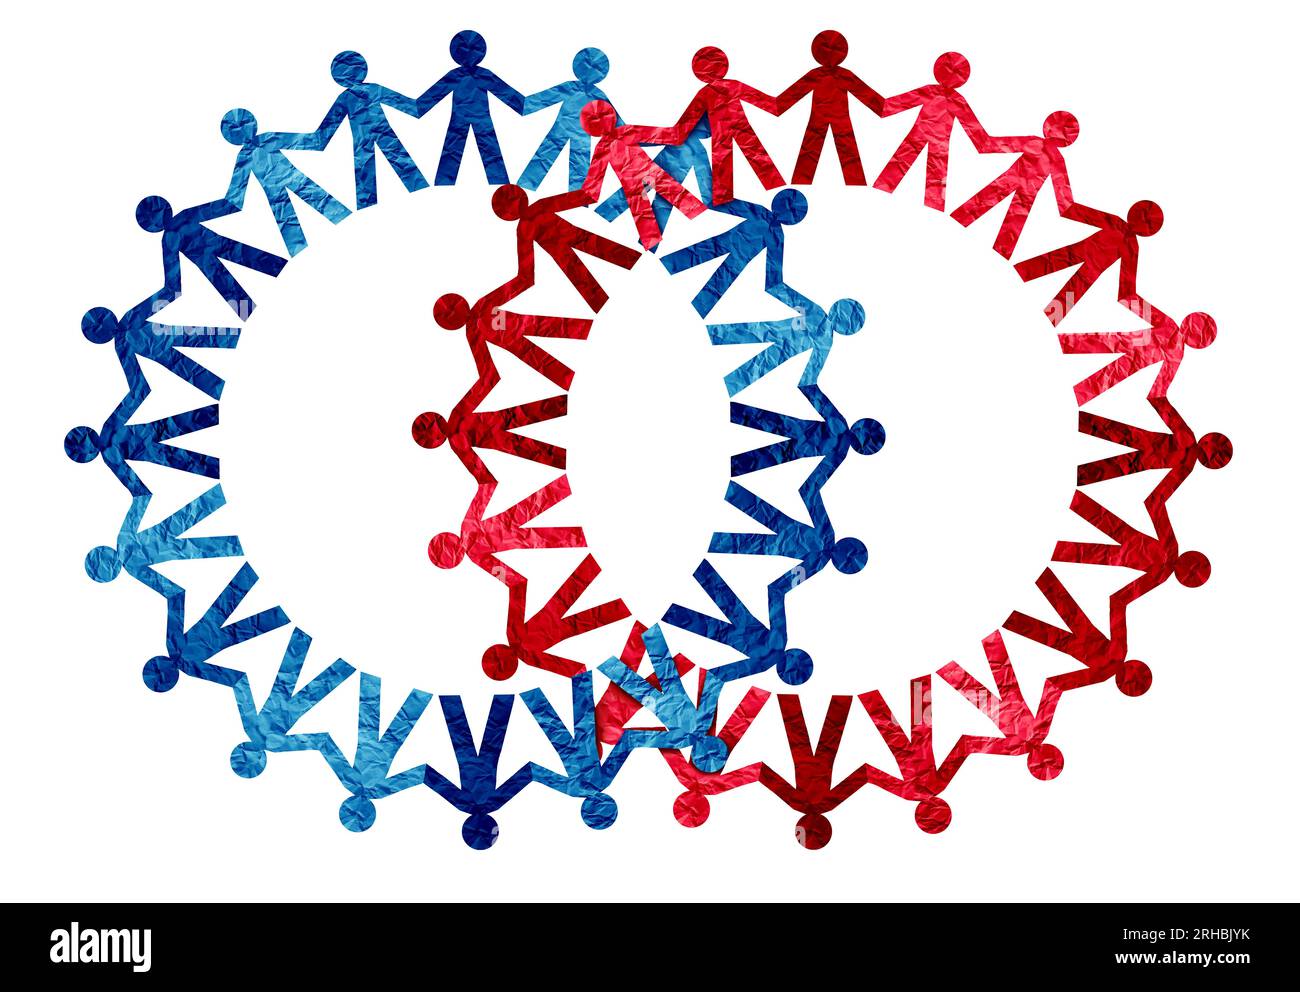 Vereinte Menschen als zwei Gruppen, die miteinander verbunden sind als ein parteiübergreifendes Konzept von Vielfalt und Crowd-Kooperation als rot-blaue Gruppe, die Politik als Kontras repräsentiert Stockfoto